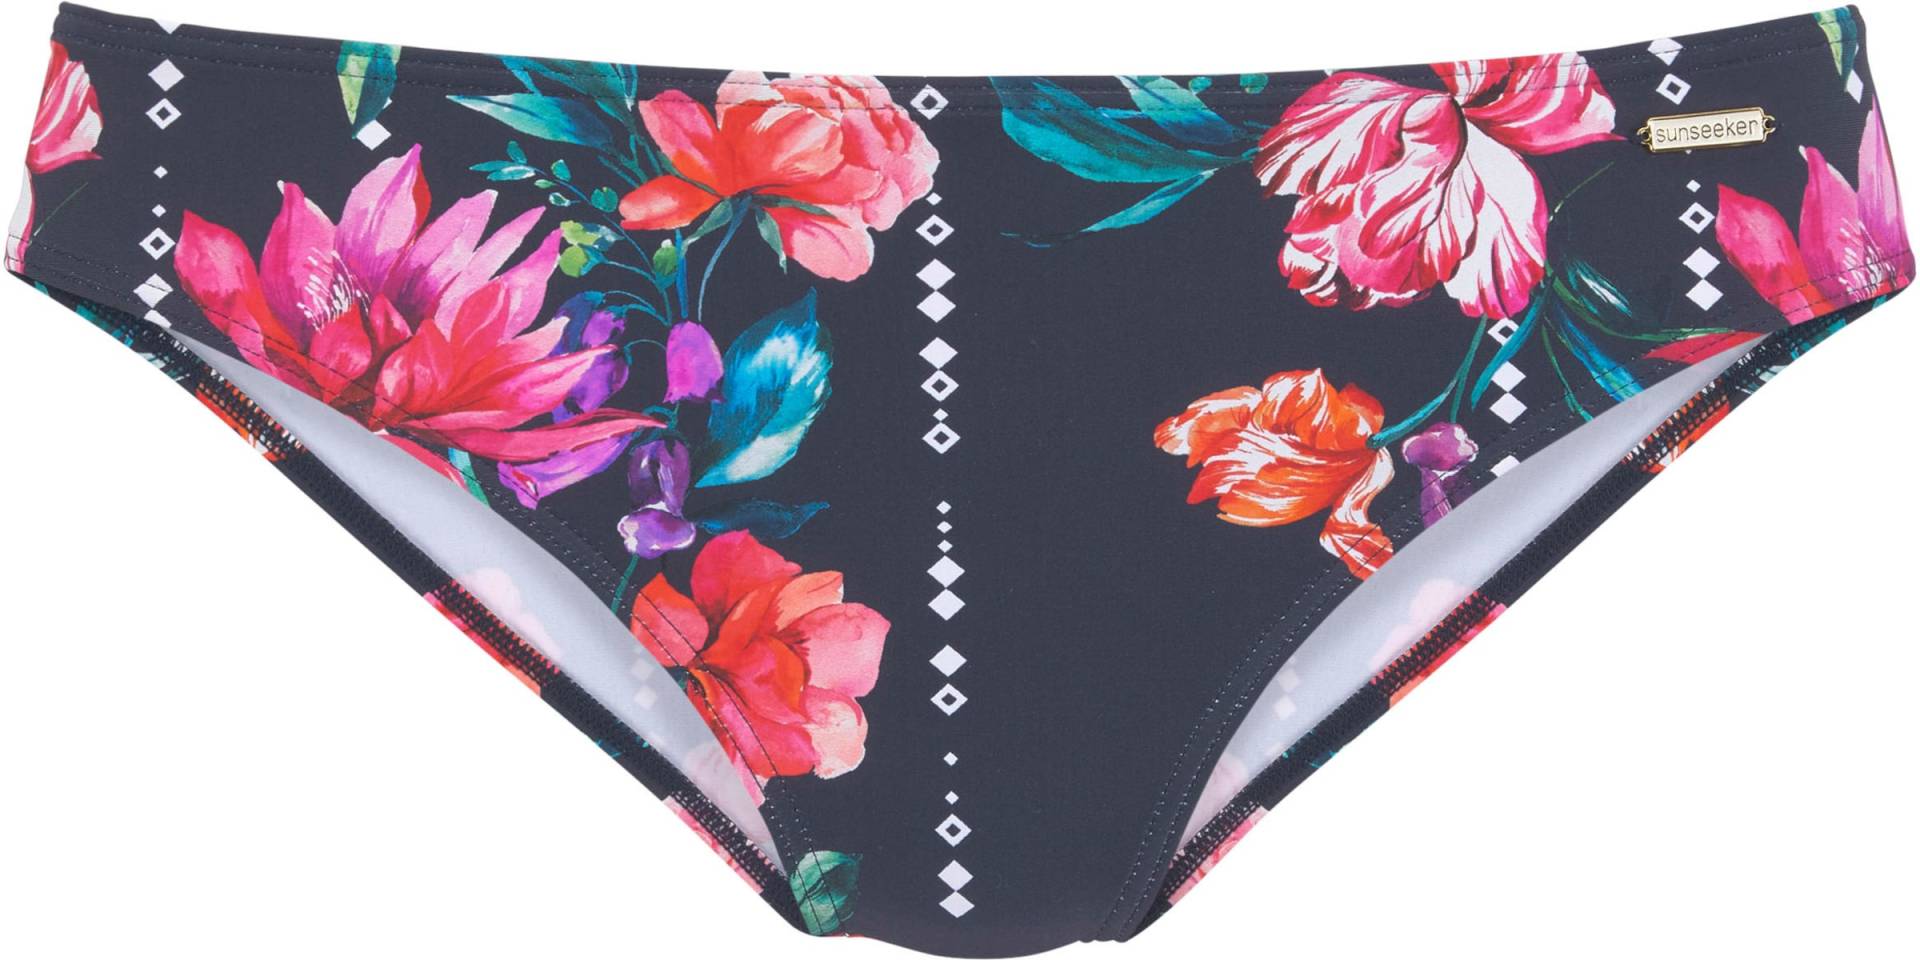 Bikini-Hose in marine-bedruckt von Sunseeker